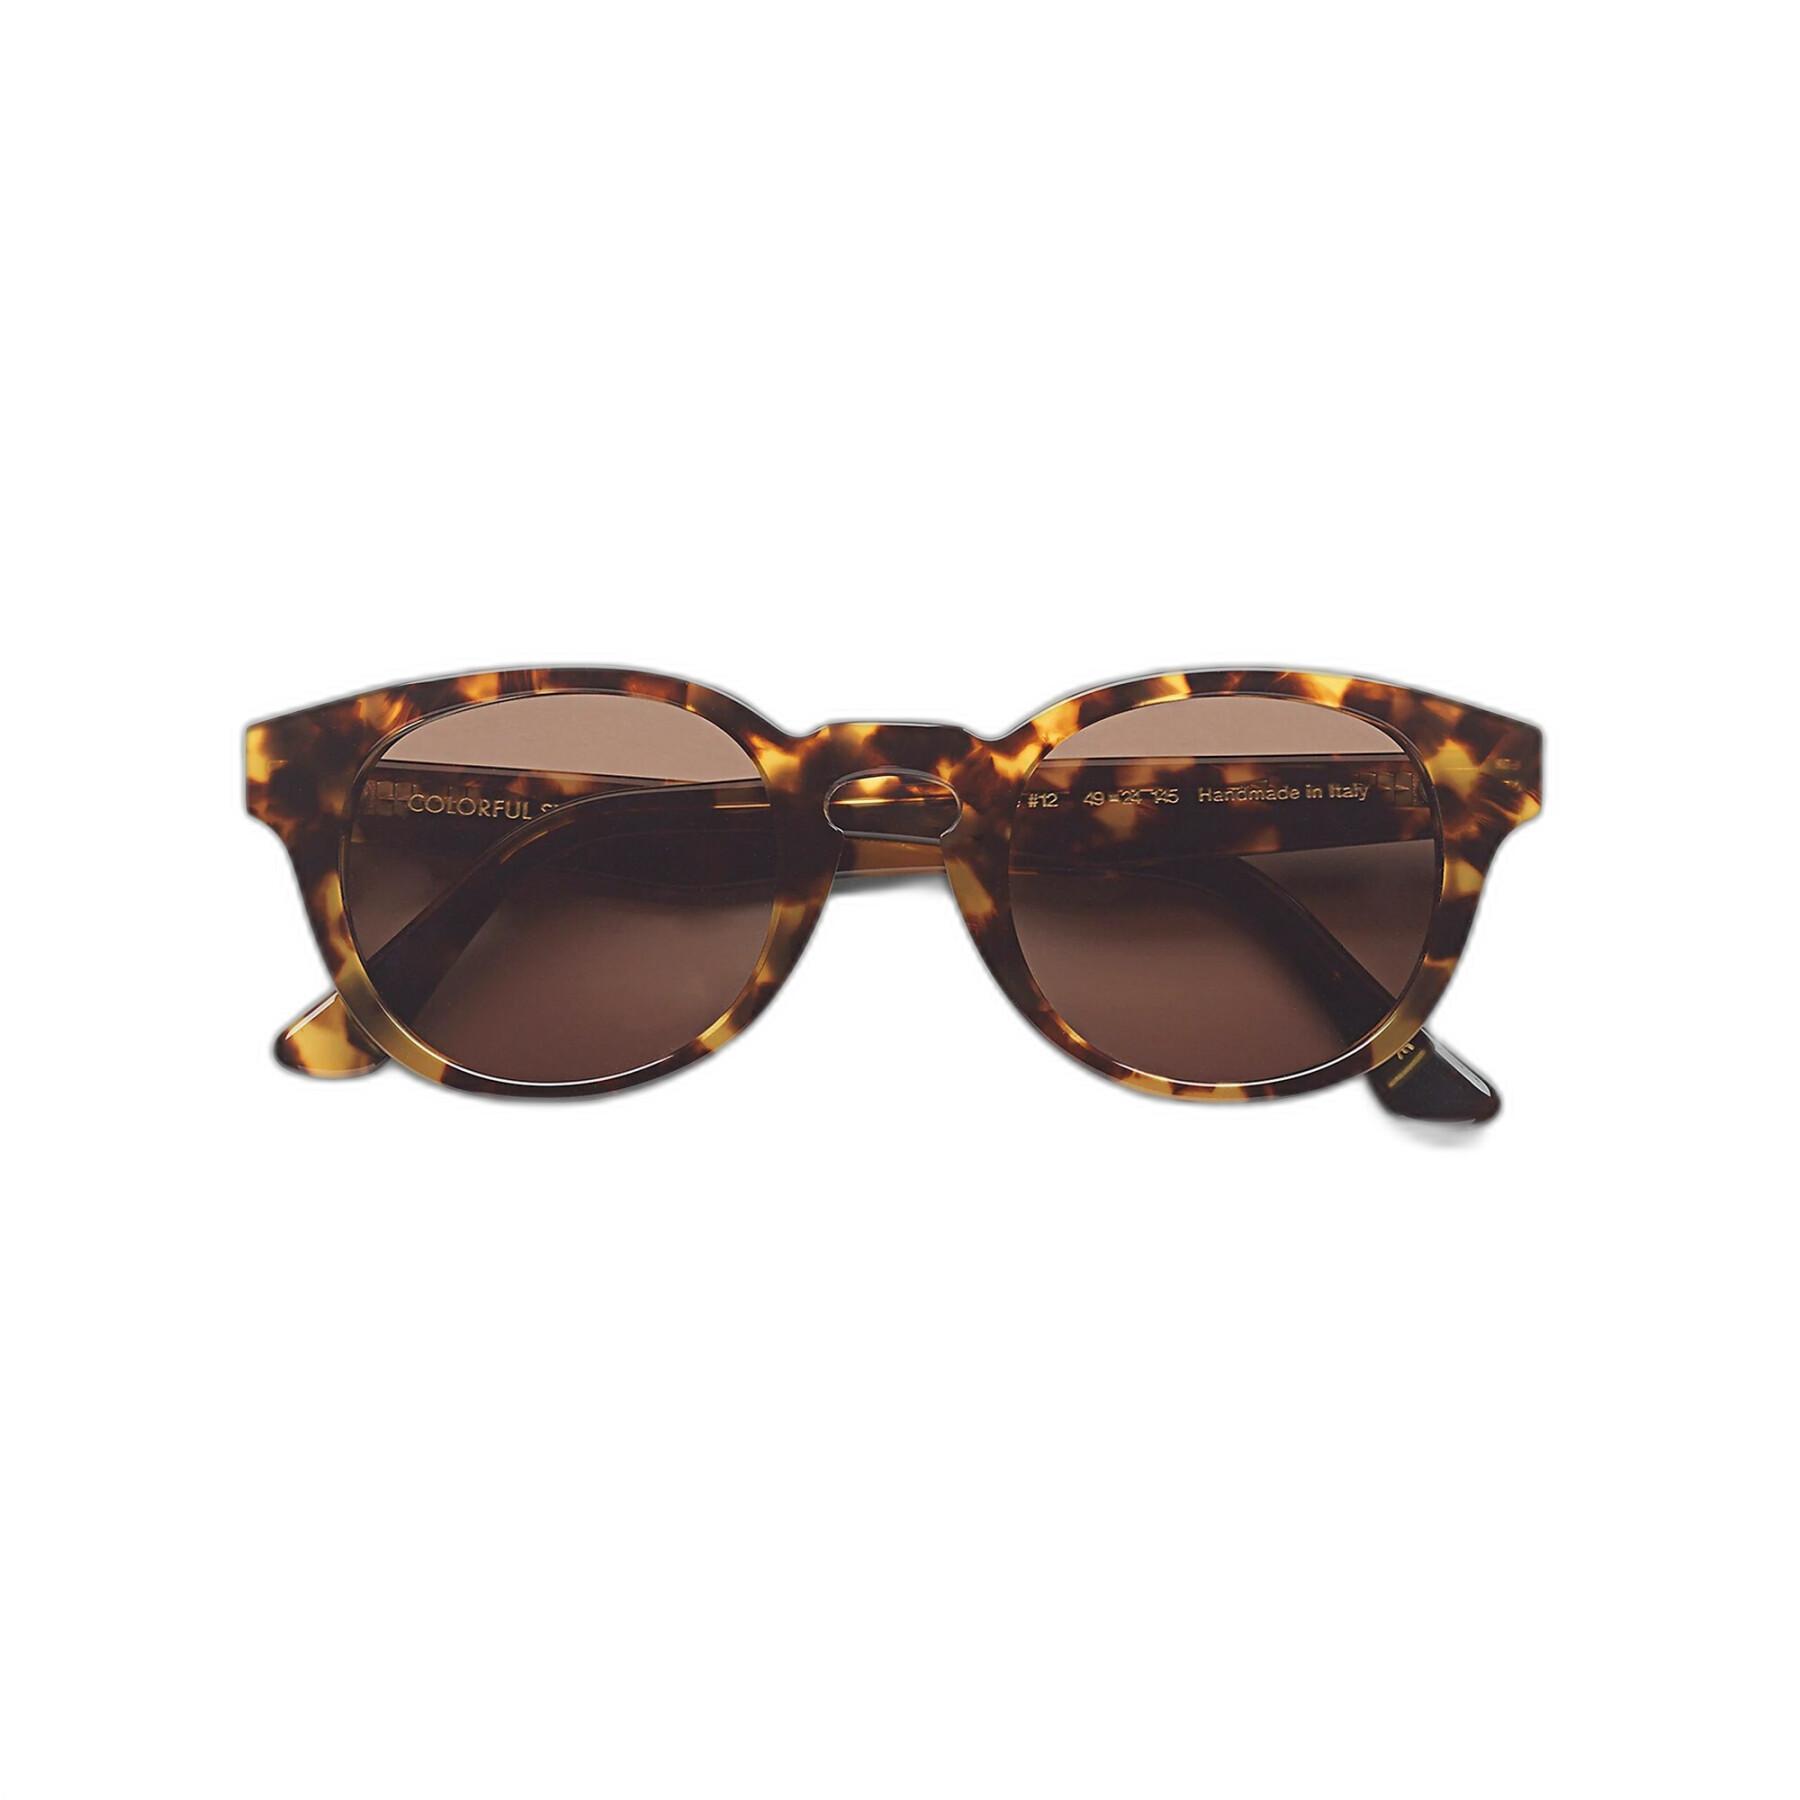 Okulary przeciwsłoneczne Colorful Standard 12 classic havana/brown